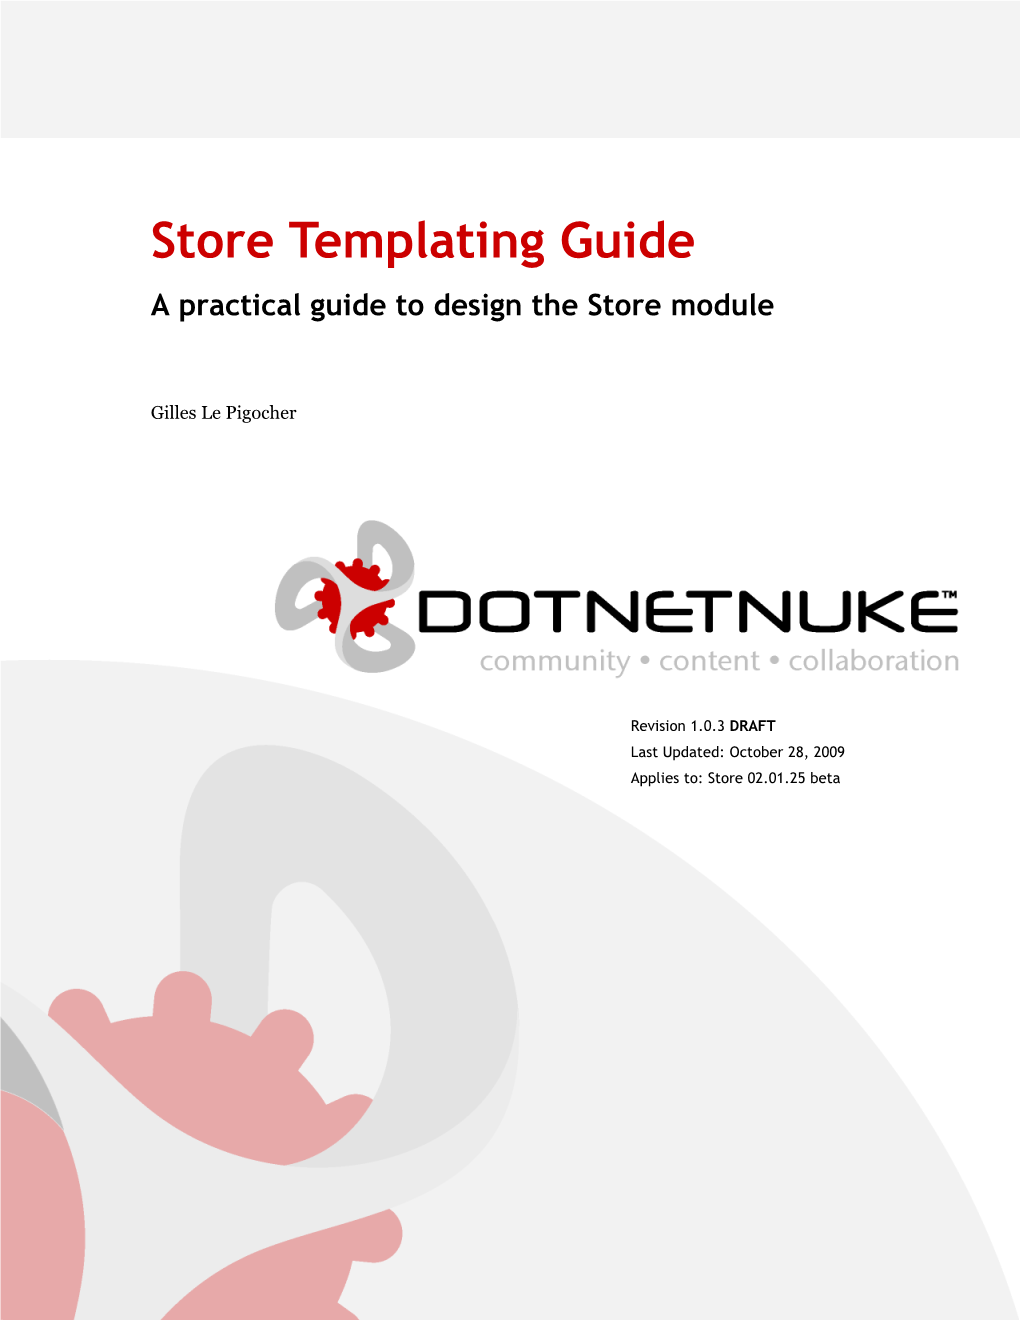 Dotnetnuke Store Templating Guide